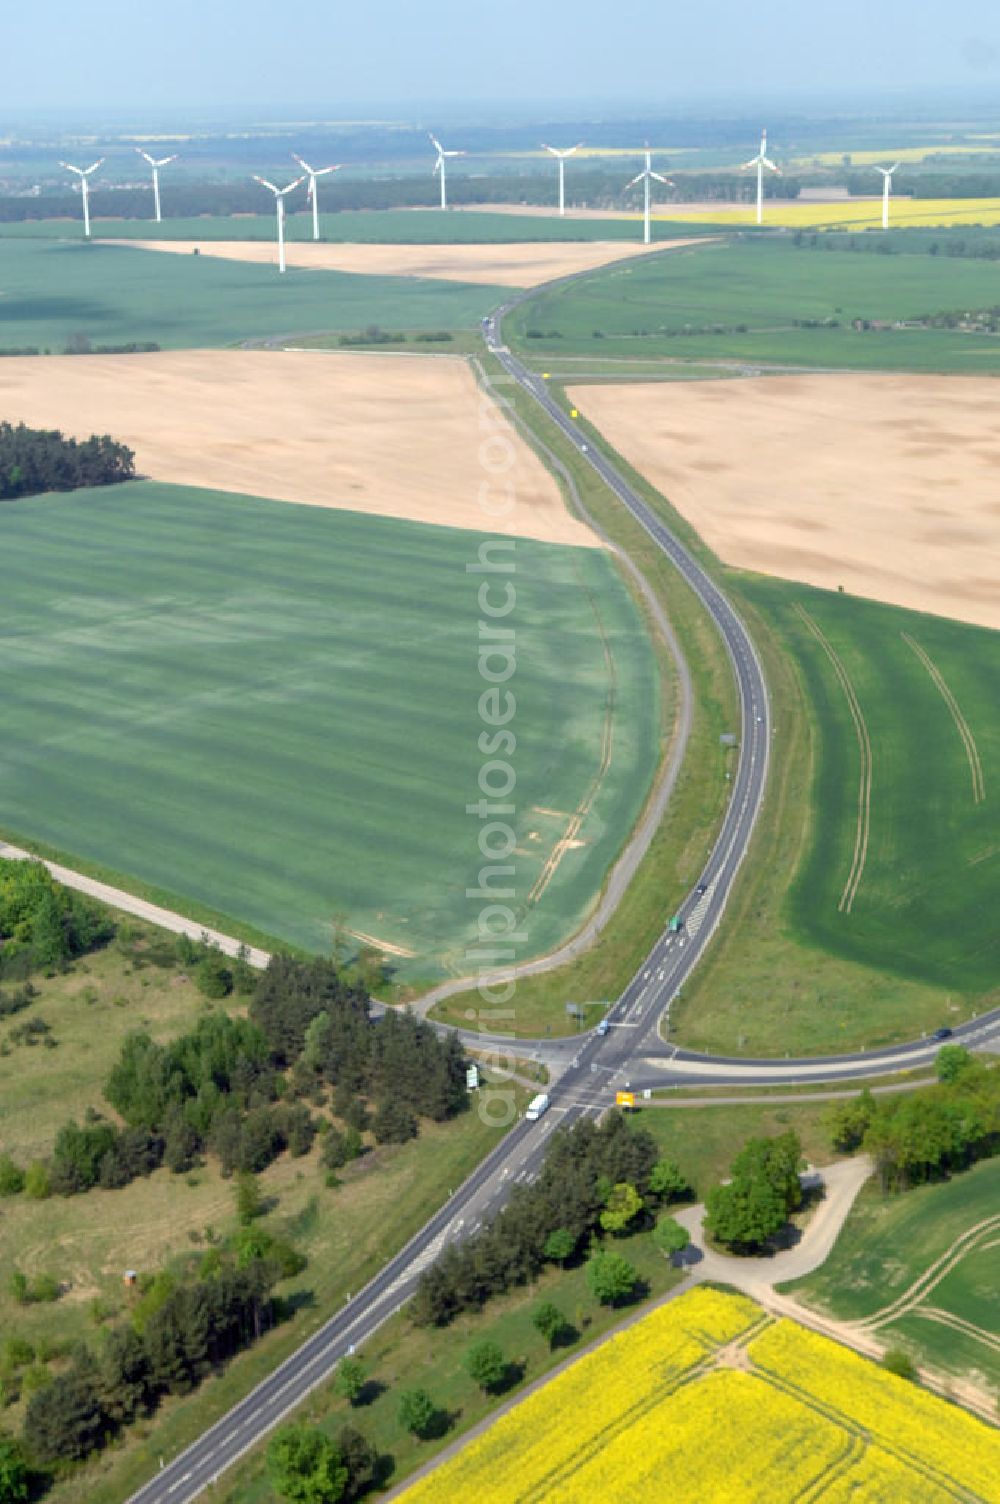 Aerial image SEELOW - Blick auf die Ortsumfahrung der Bundesstrasse B 1 westlich von Seelow. Landesbetrieb Straßenwesen Brandenburg (